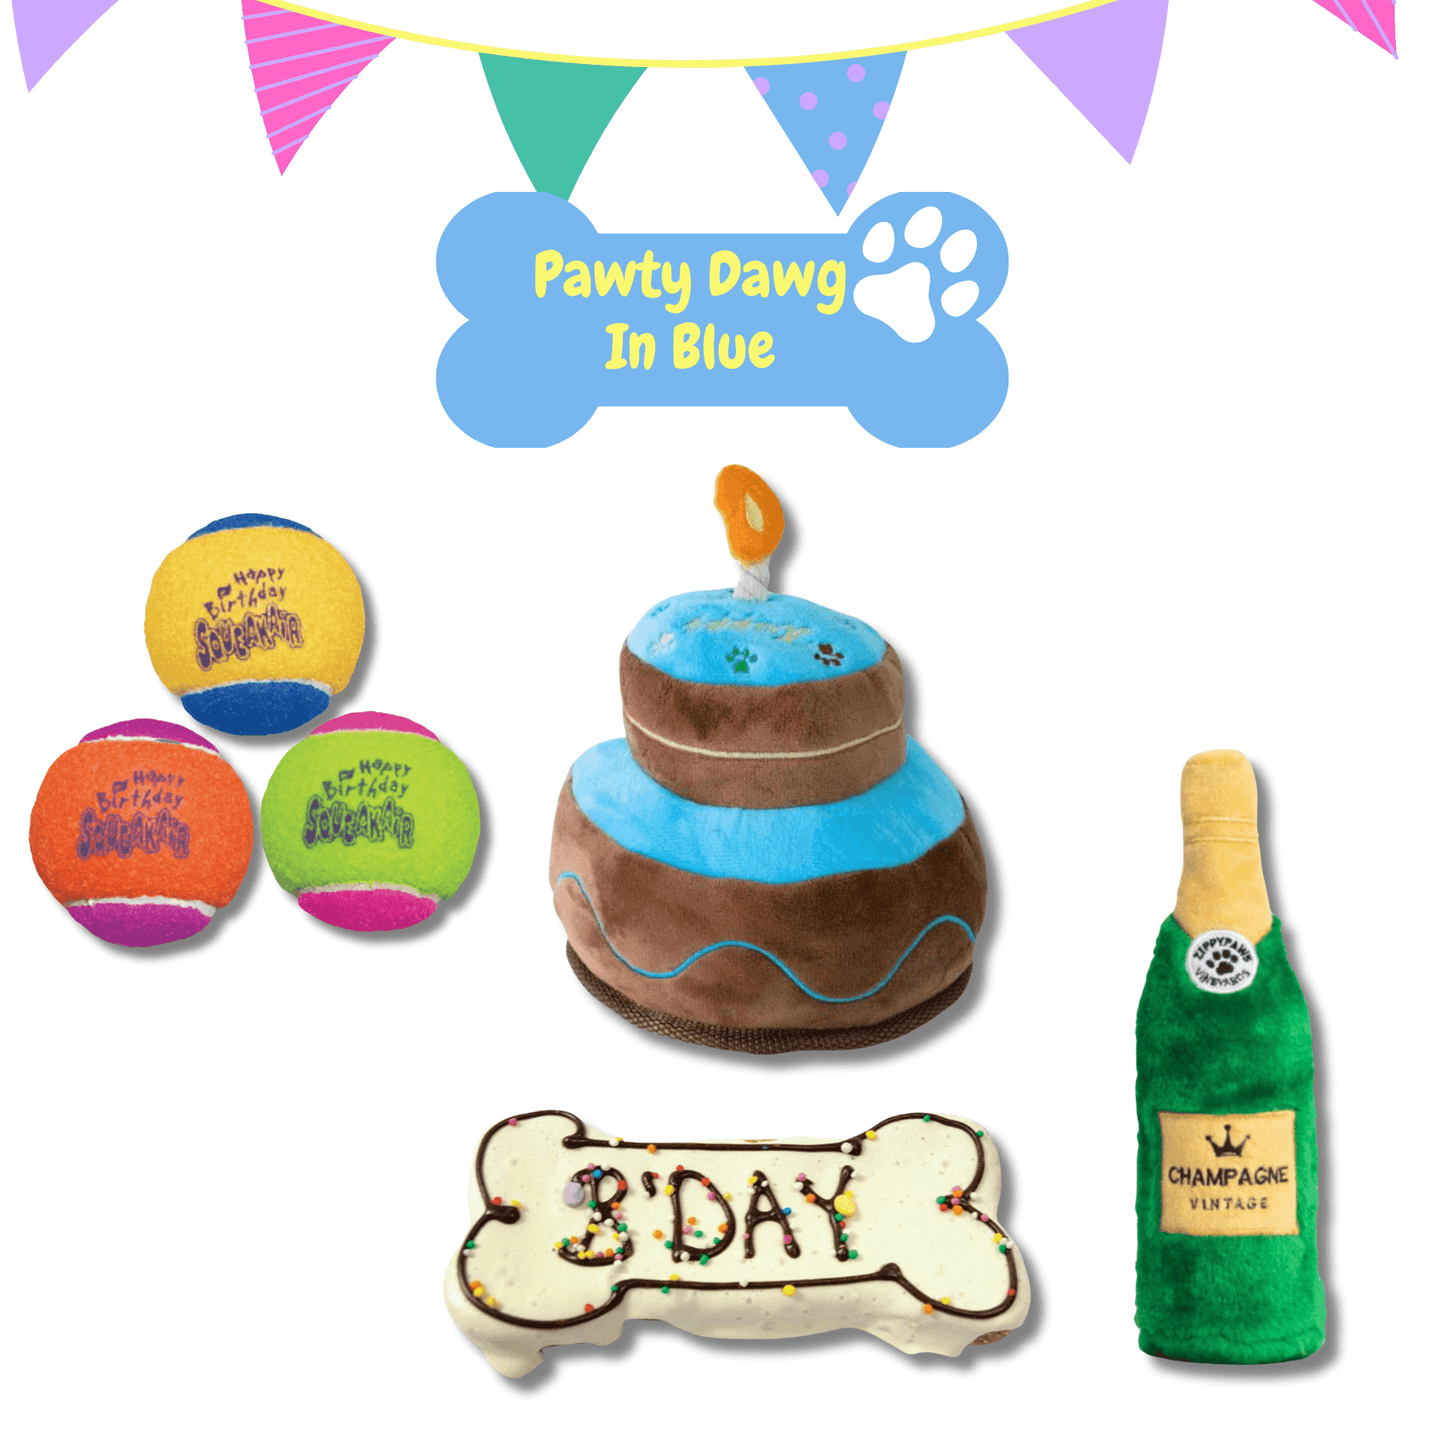 dog birthday gift box, dog toy, fetch ball, birthday cake dog toy, let's pawty